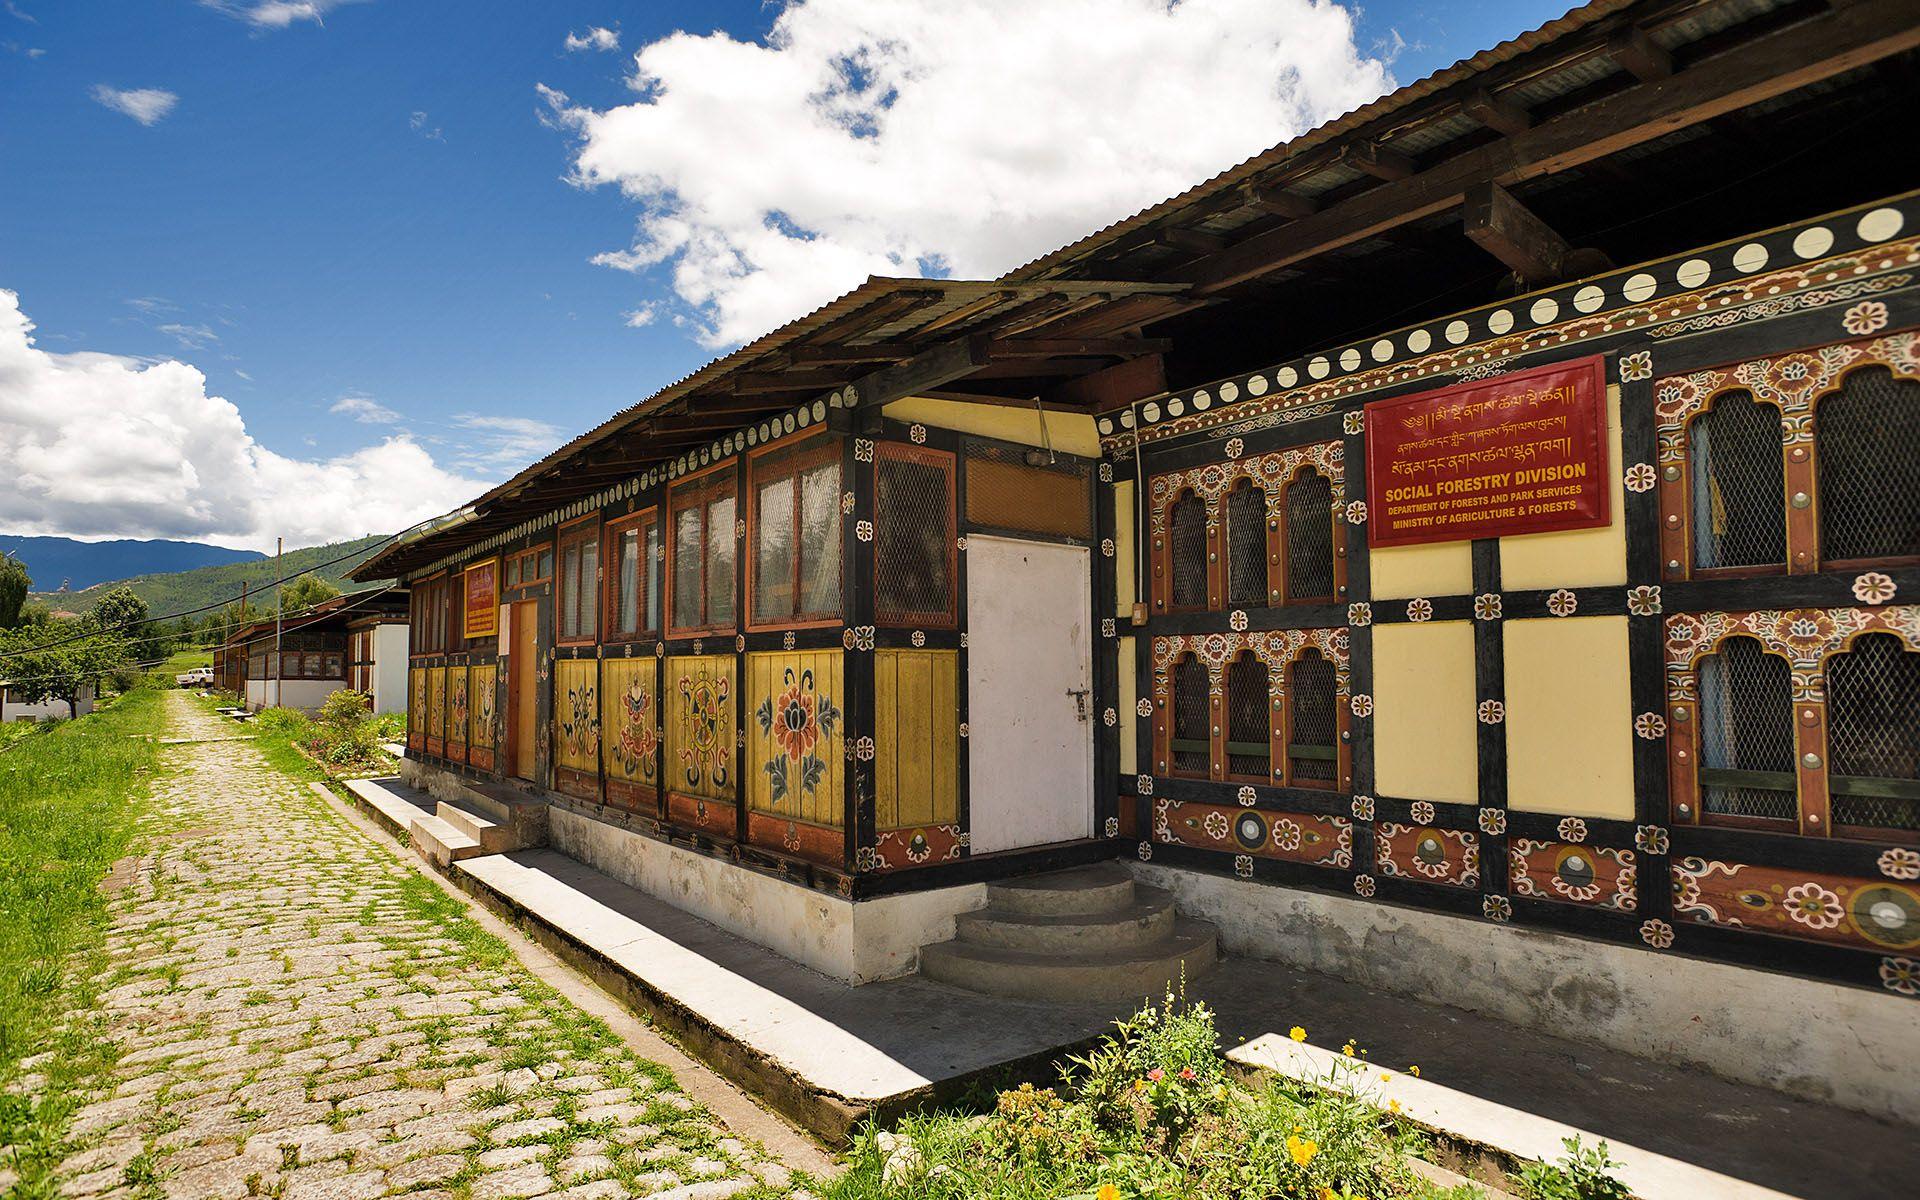 What's unique about Bhutan?